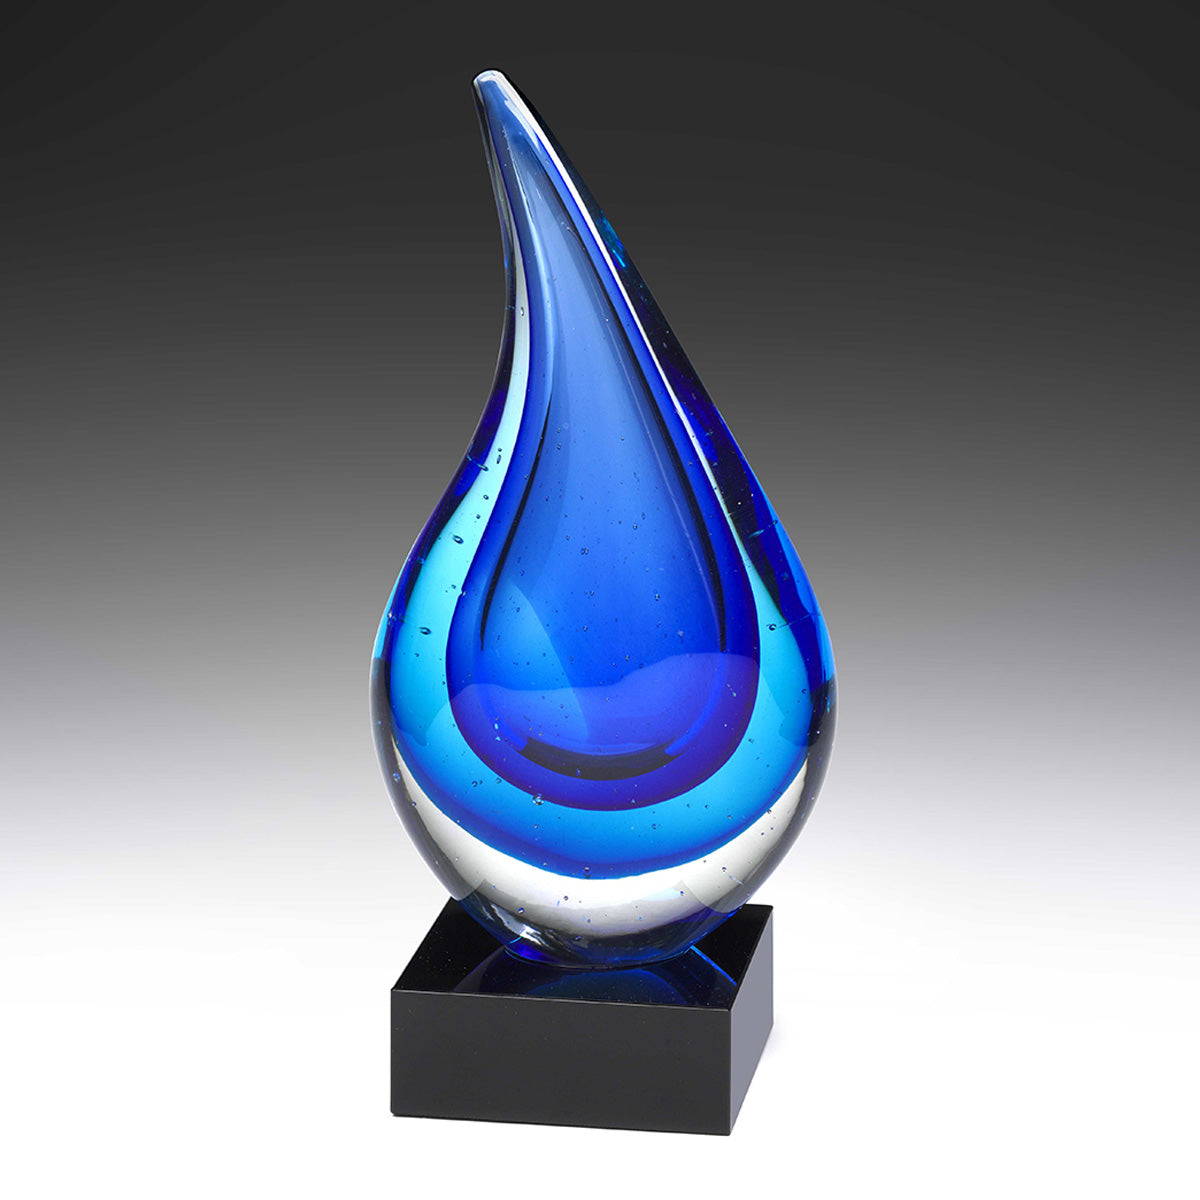 Art Glass Award - Cloudburst